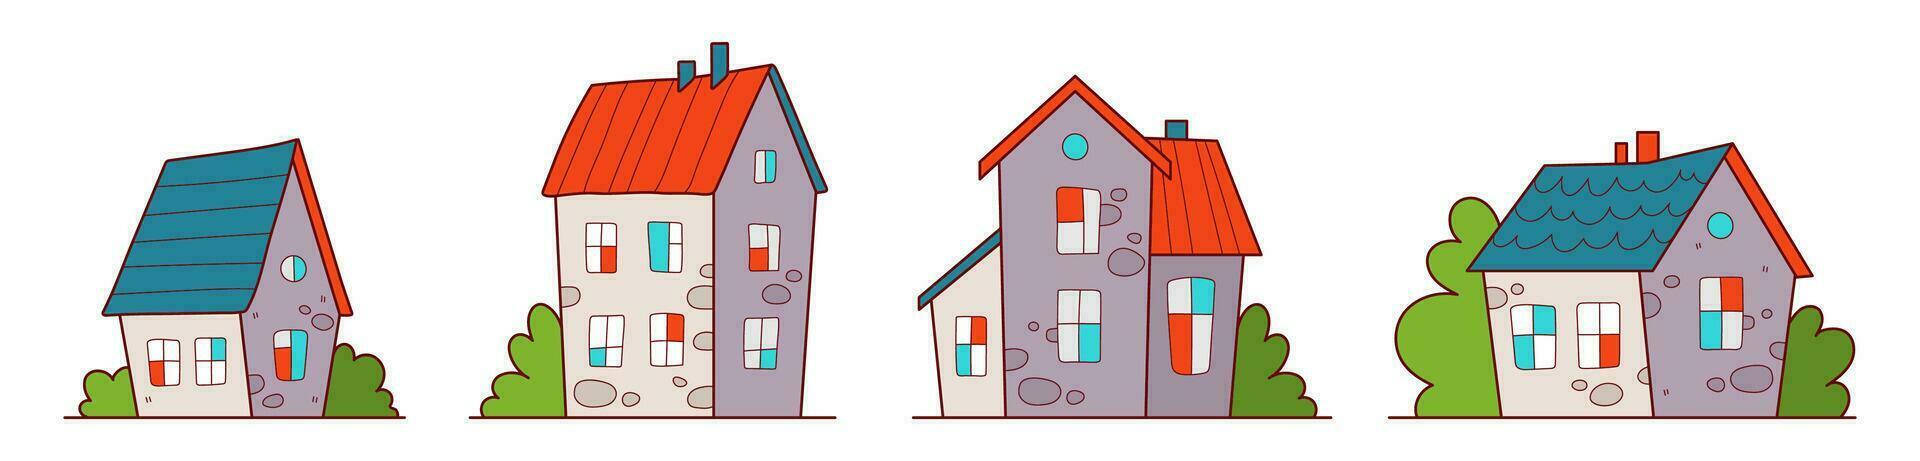 colección de cabañas de dibujos animados. varias pequeñas casas lindas ilustración vectorial vector